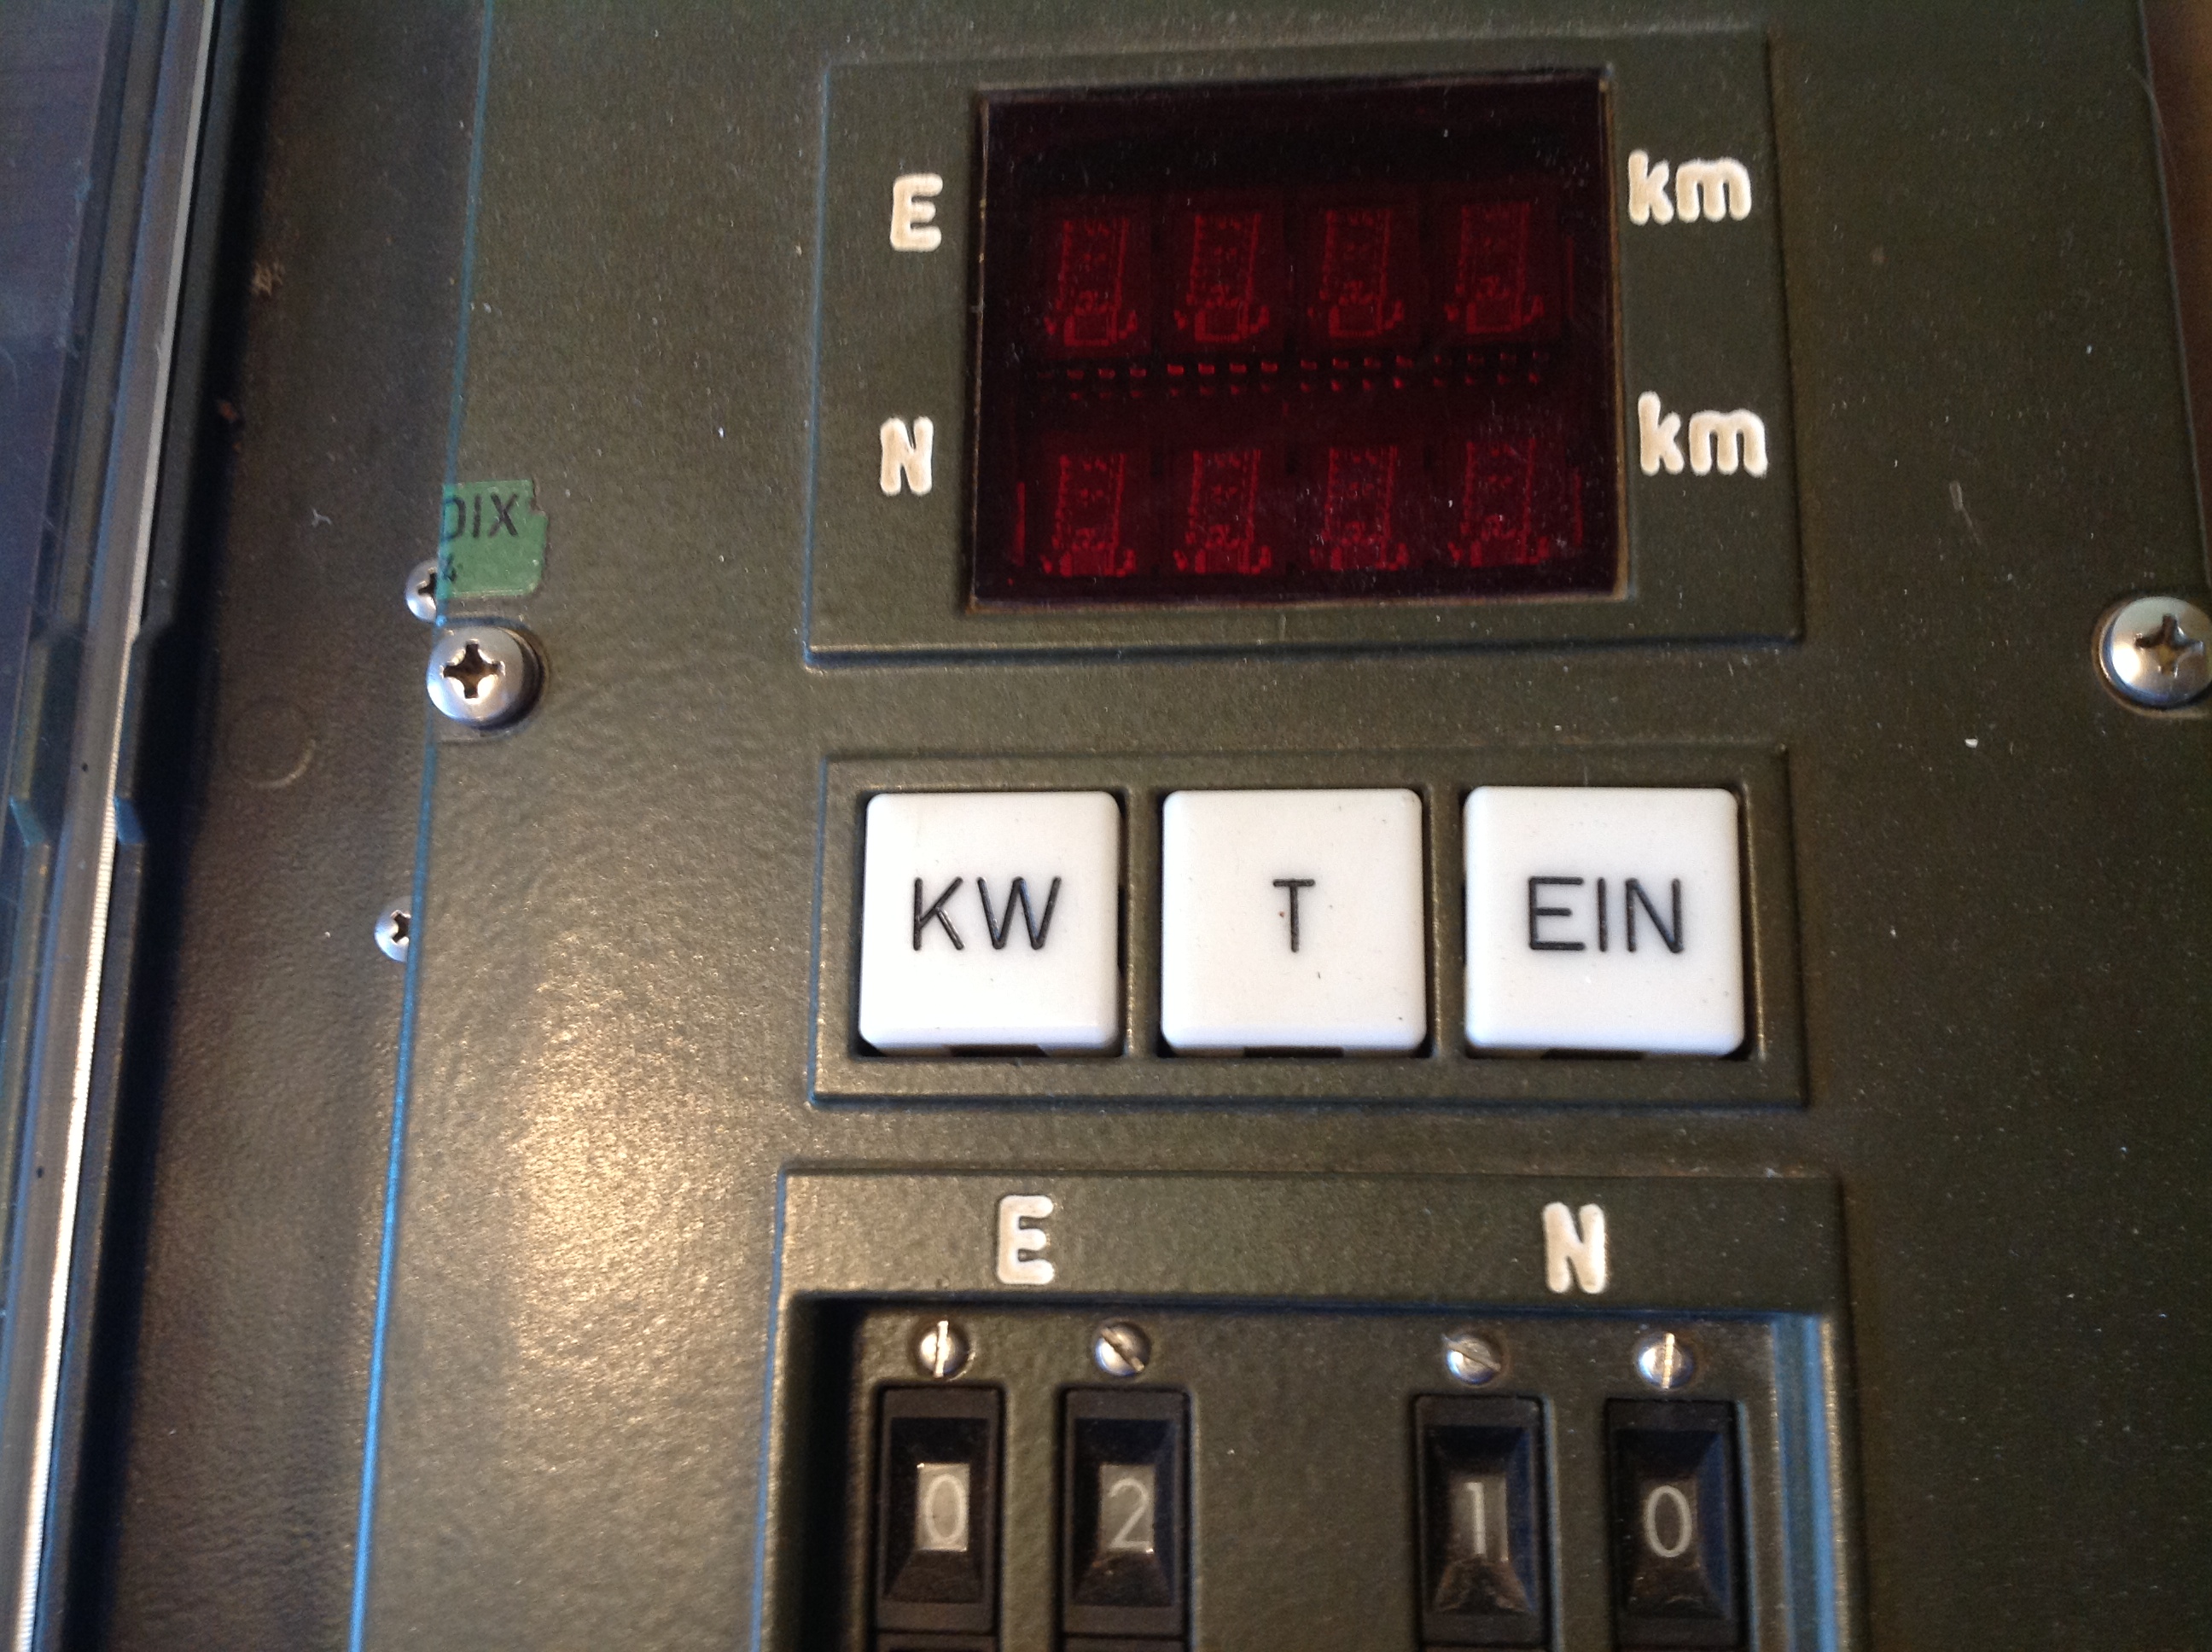 Radar Zielwegzeichner "Teldix" Typ RZW 1-1